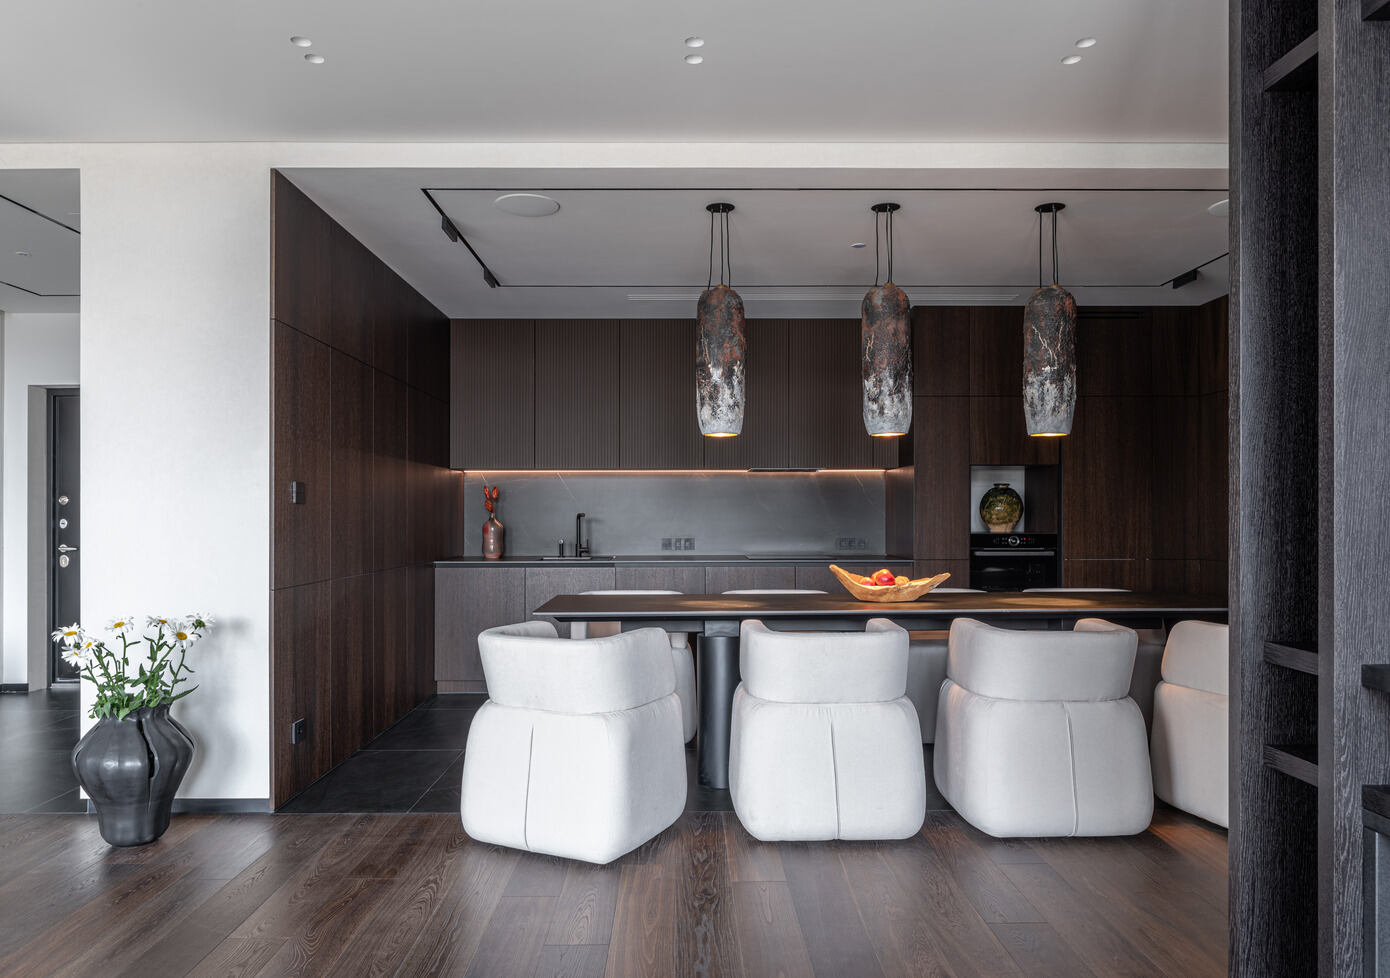 Svitlo Apartment: Elegance in Urban Design